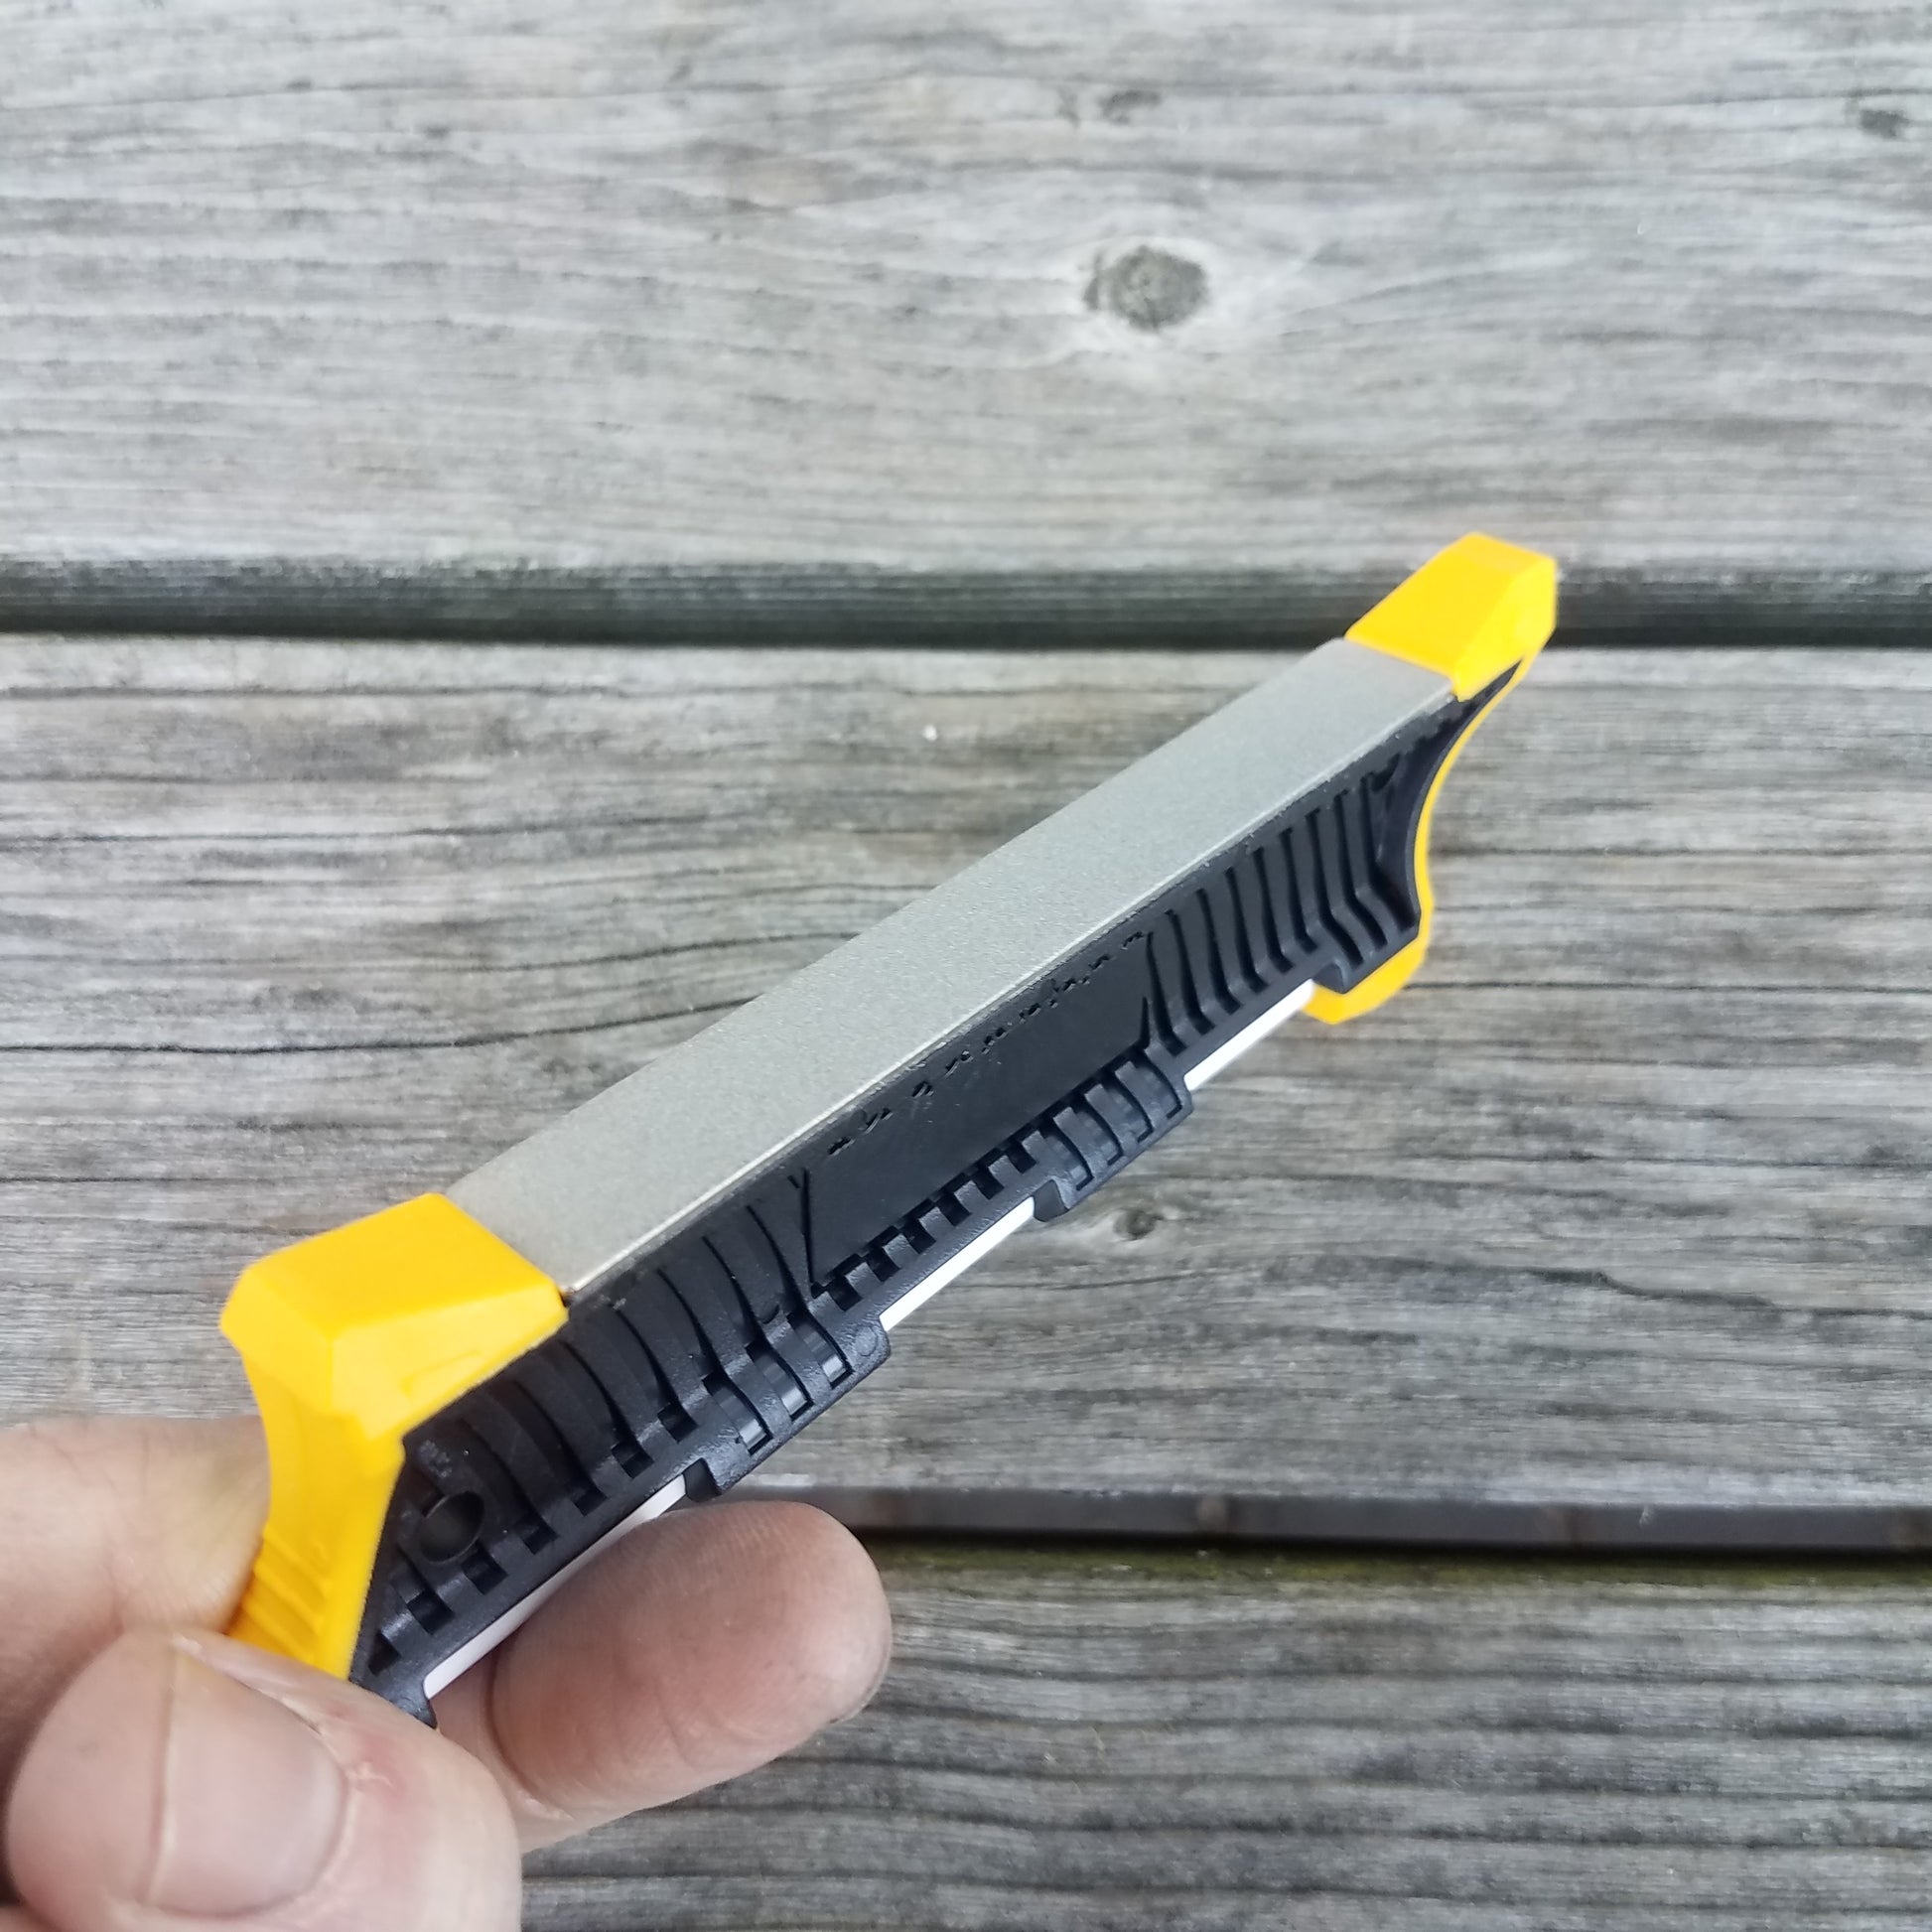 Work Sharp - Custom BHA Pocket Knife Sharpener - Backcountry